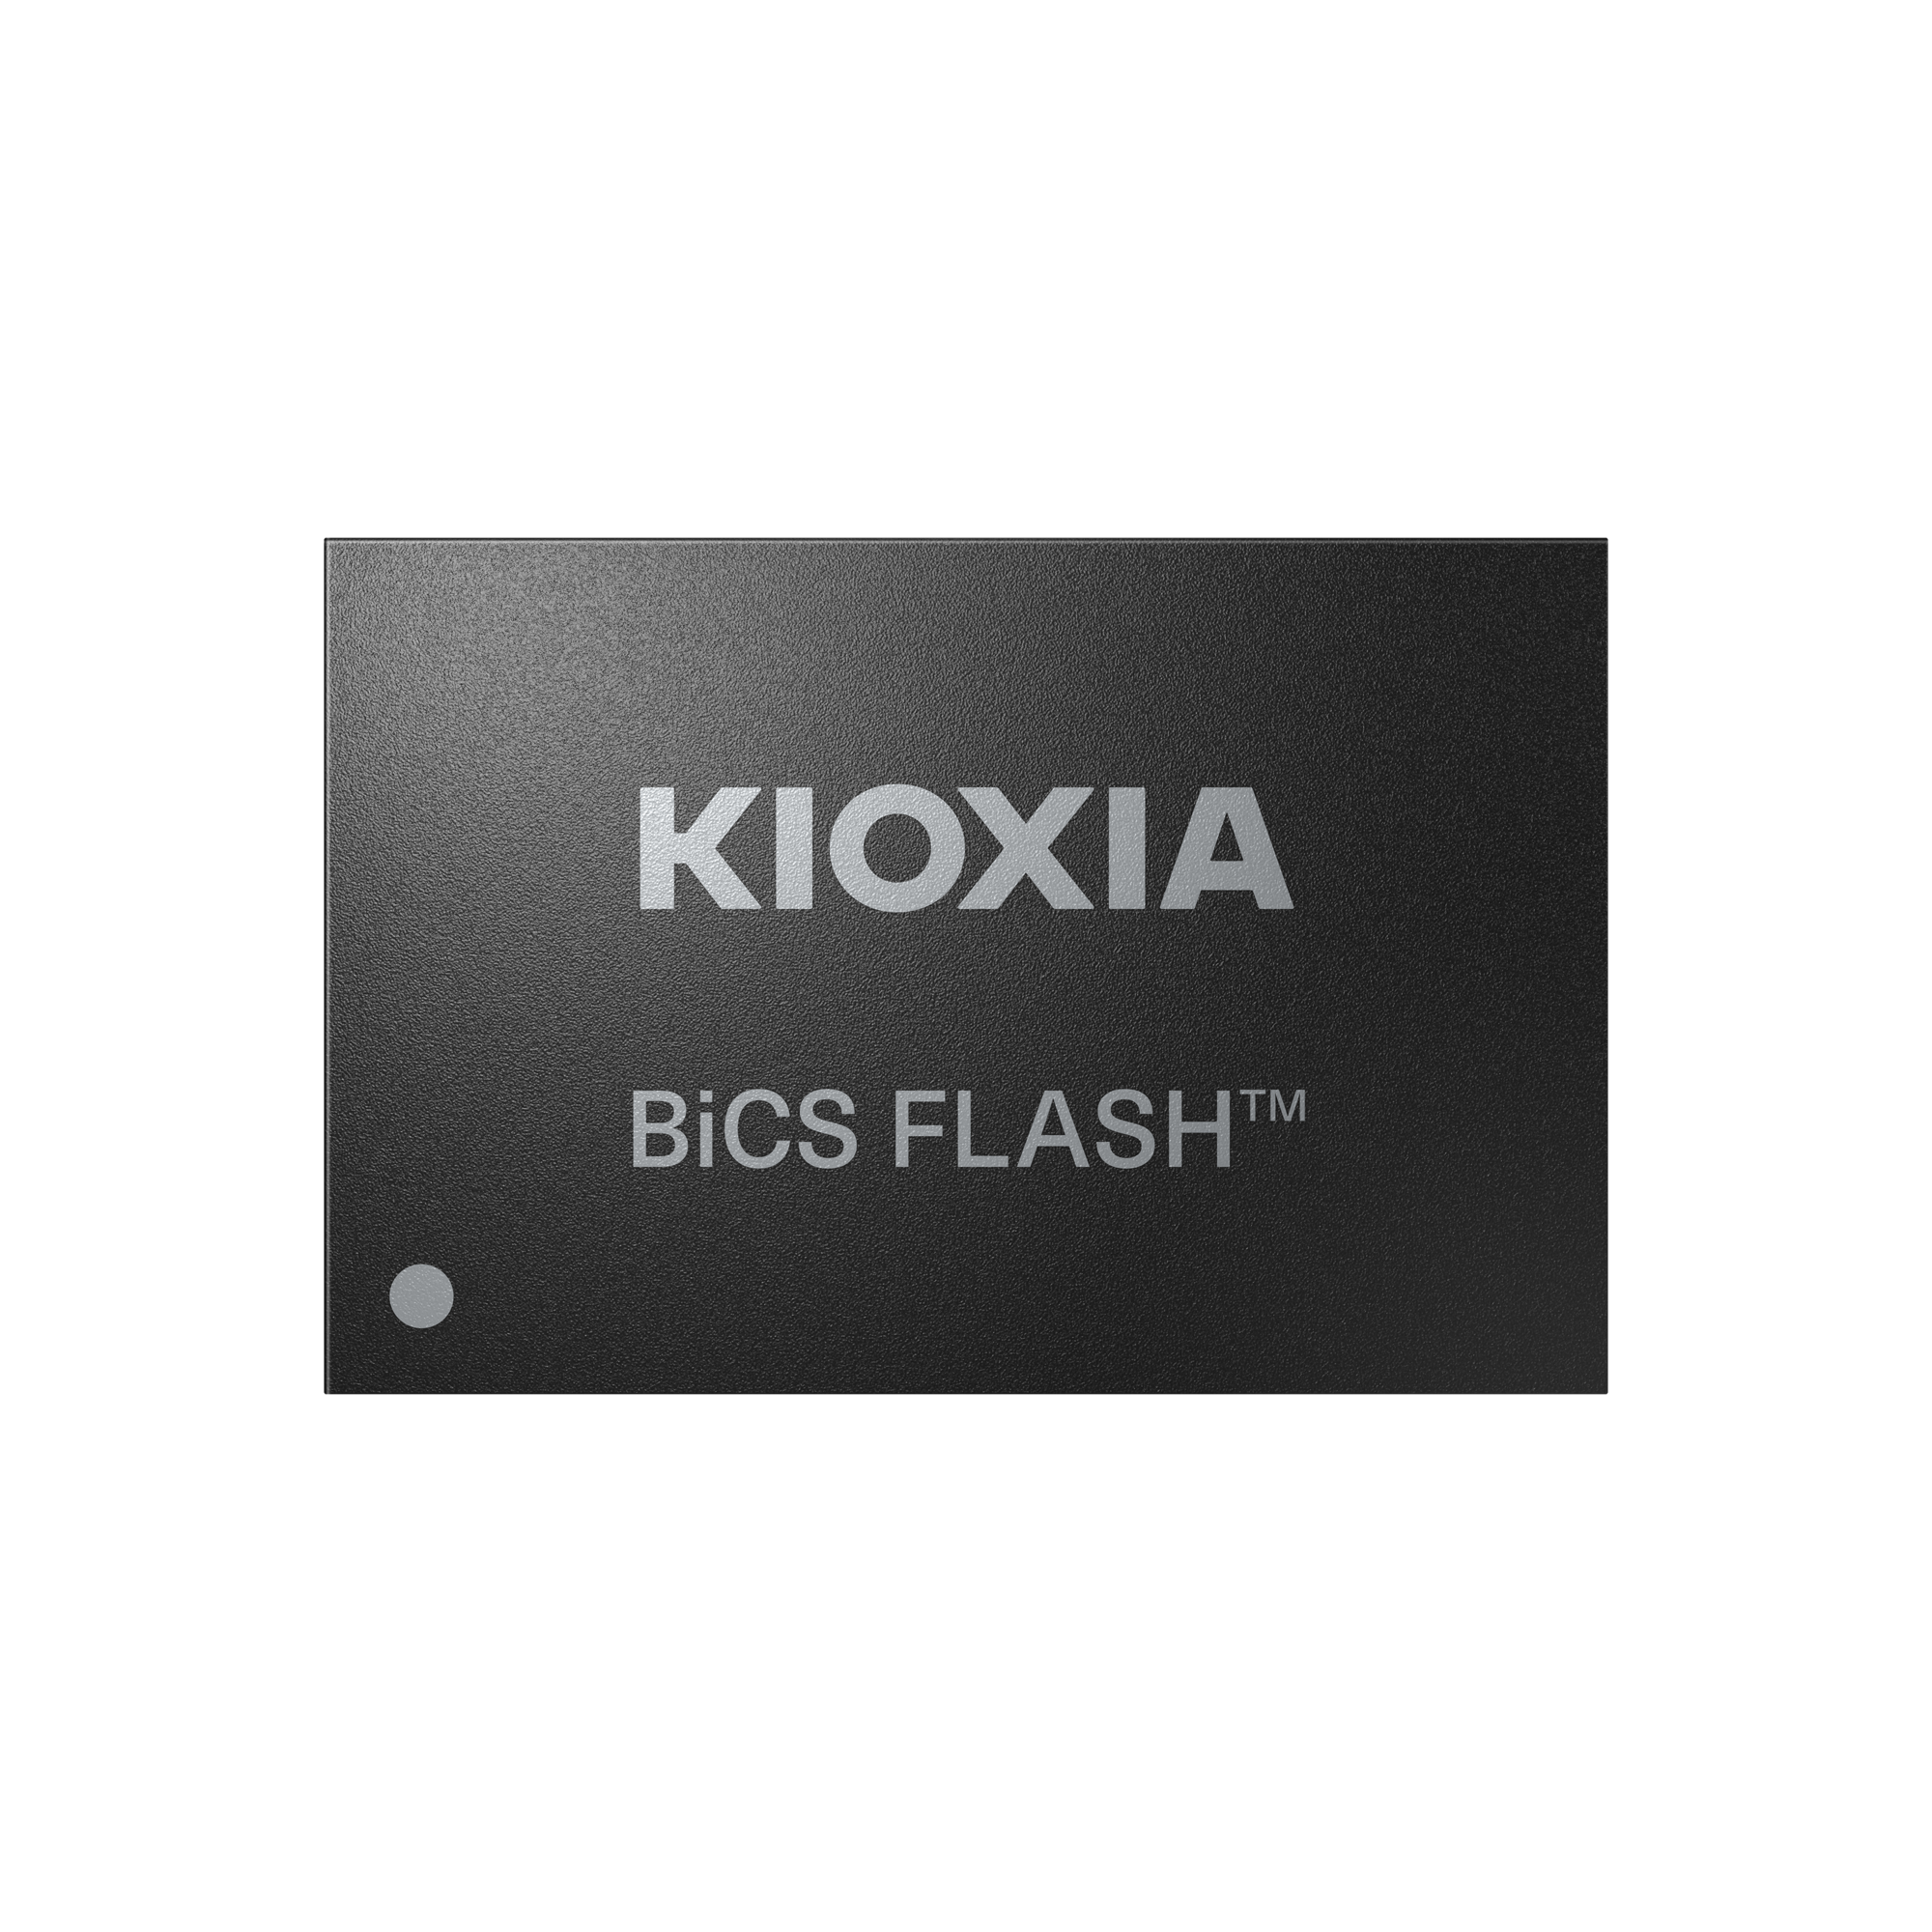 KIOXIA BiCS FLASH